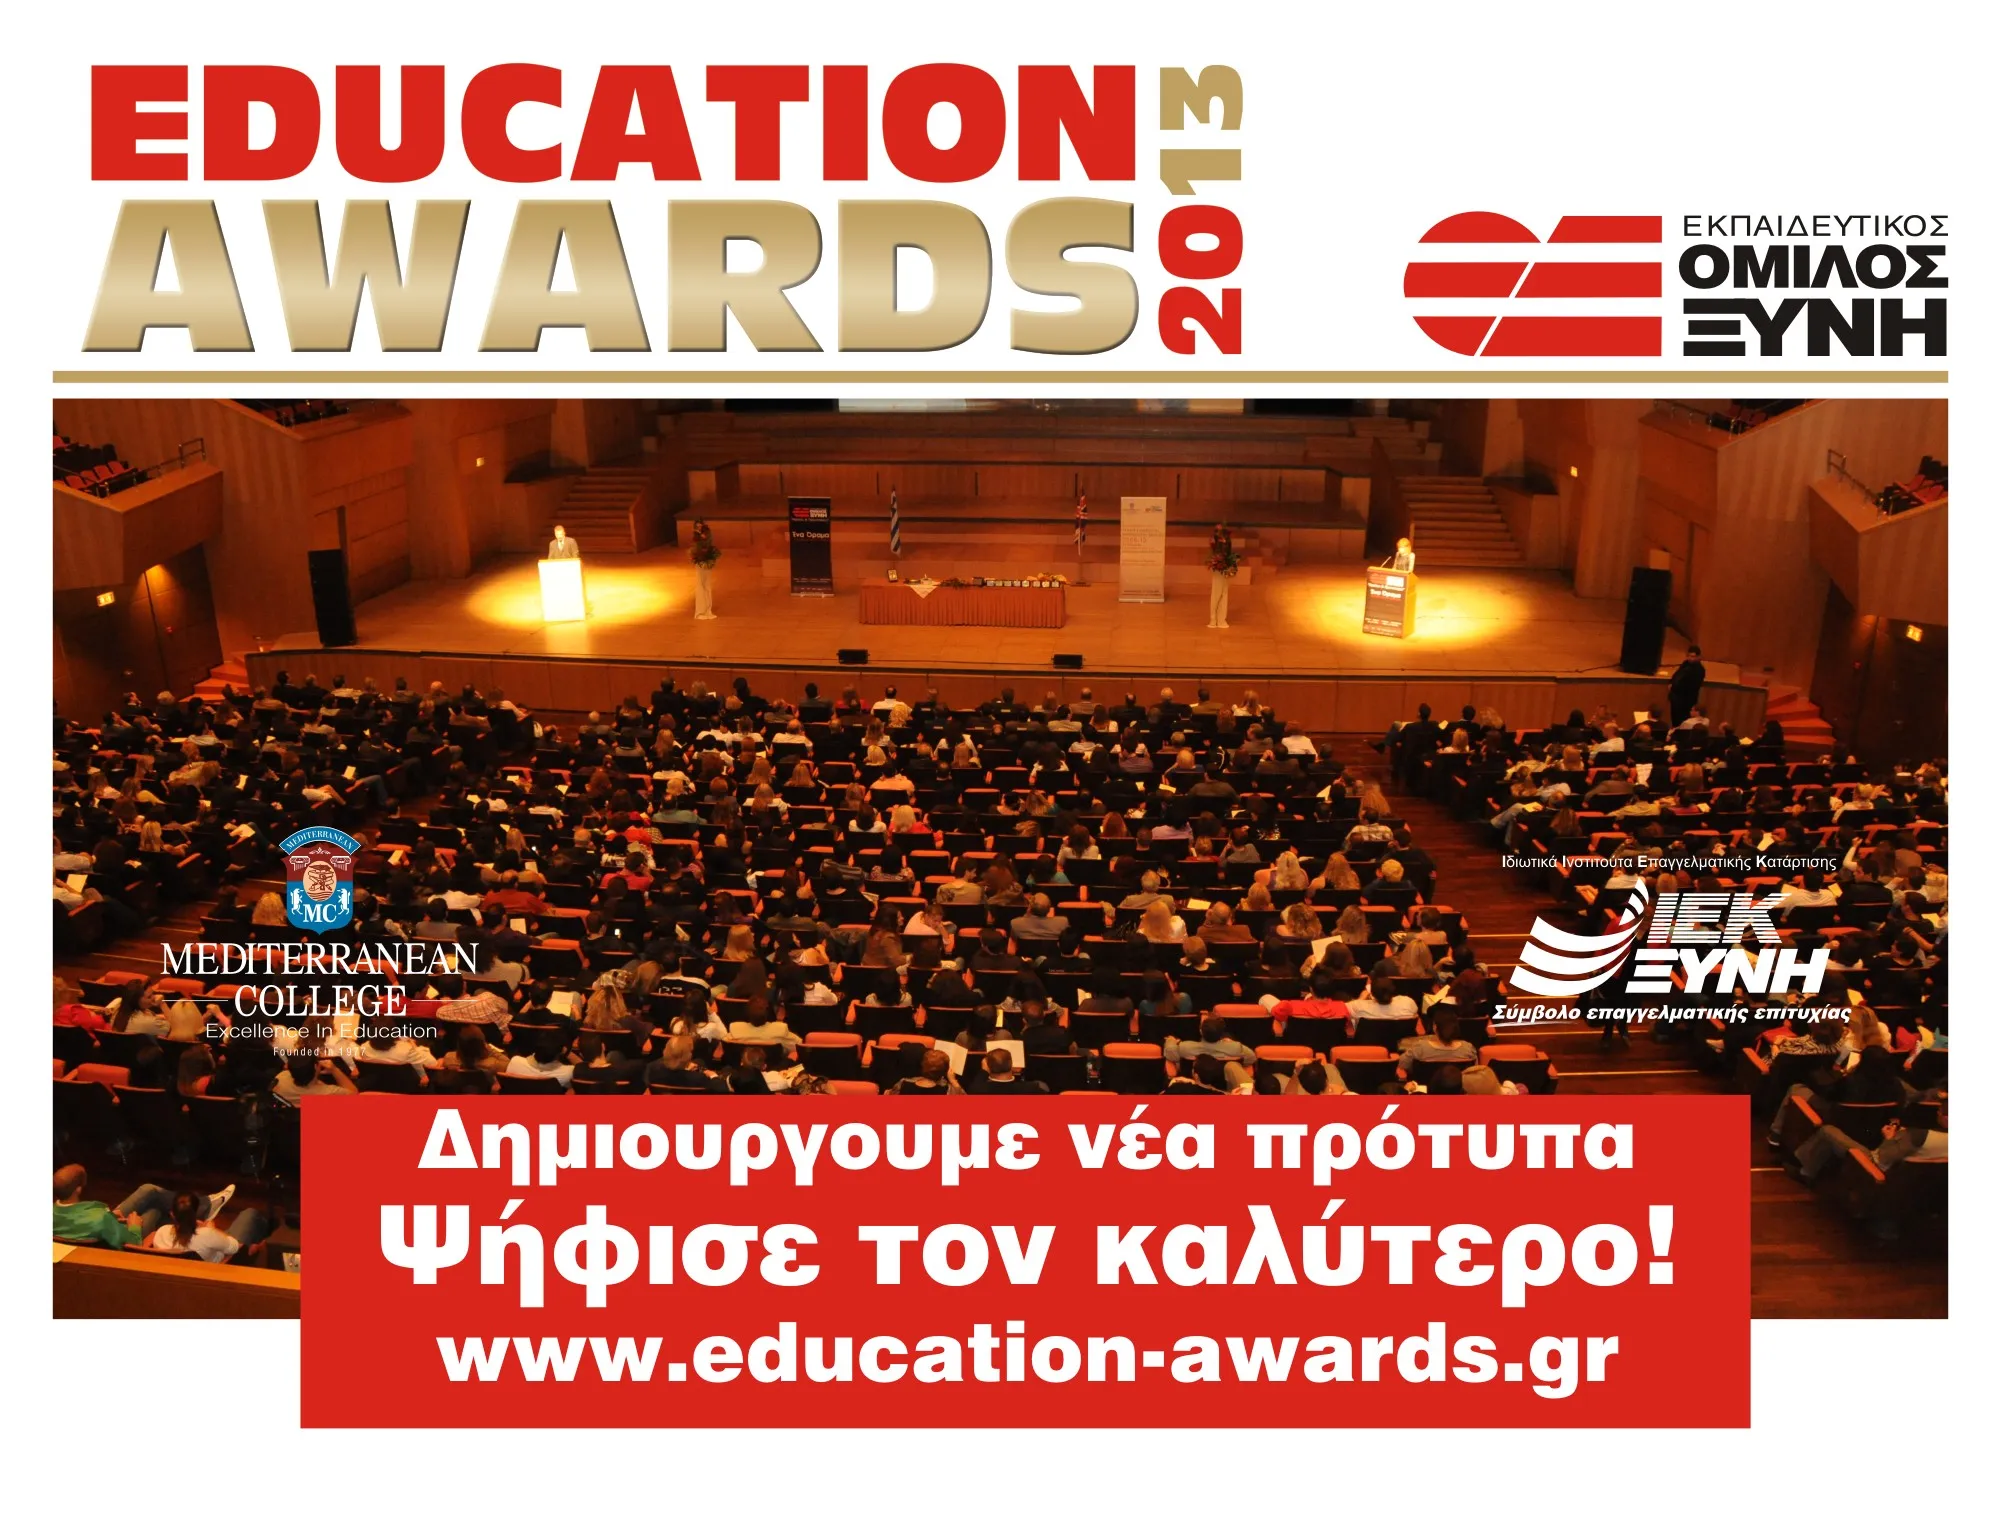 Όμιλος ΞΥΝΗ | Education Awards 2013